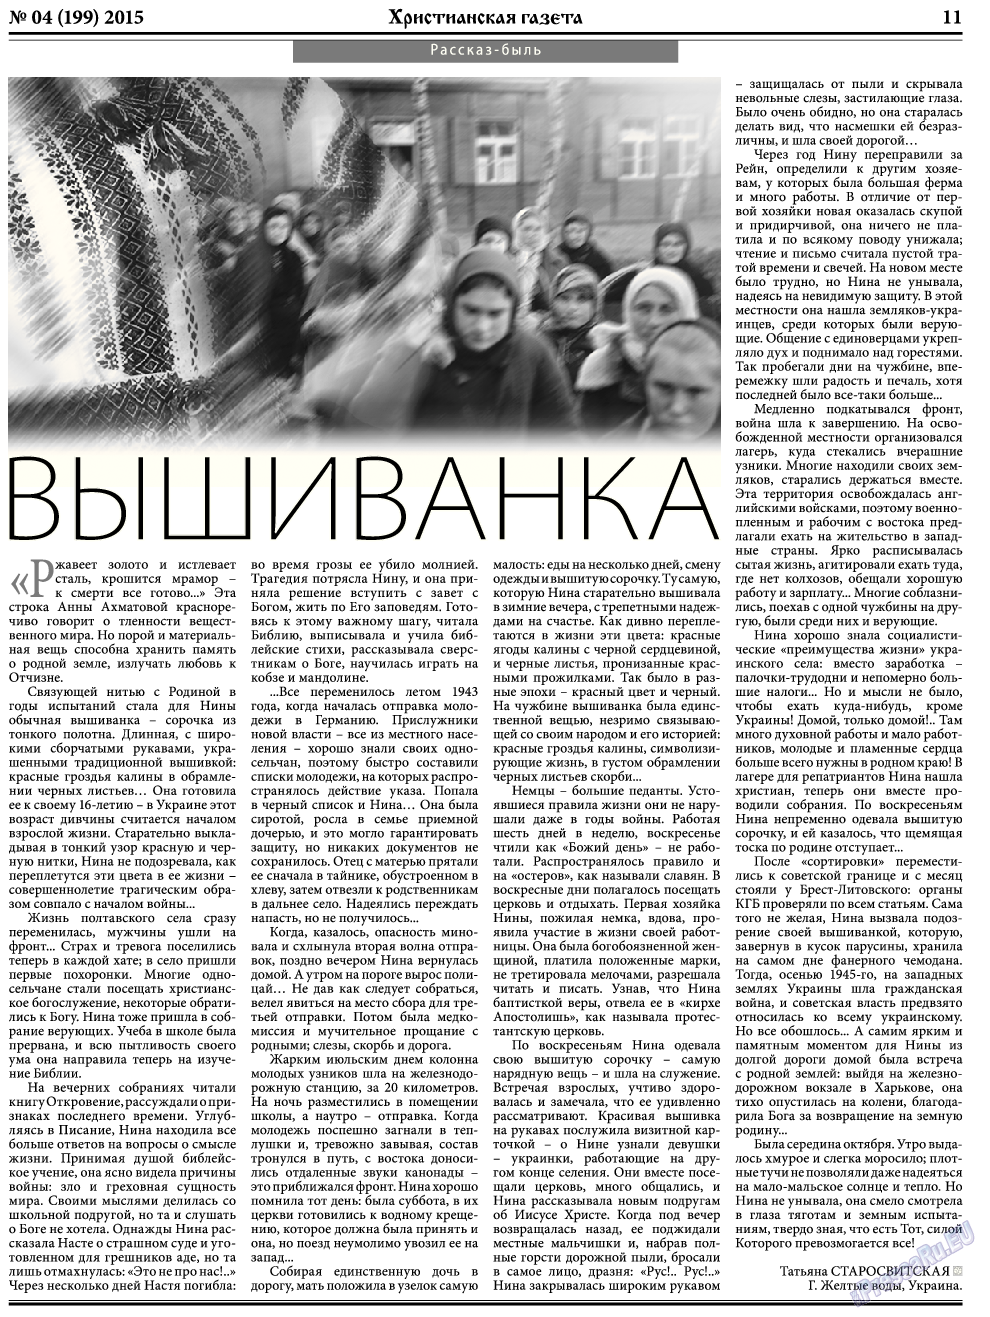 Христианская газета, газета. 2015 №5 стр.11